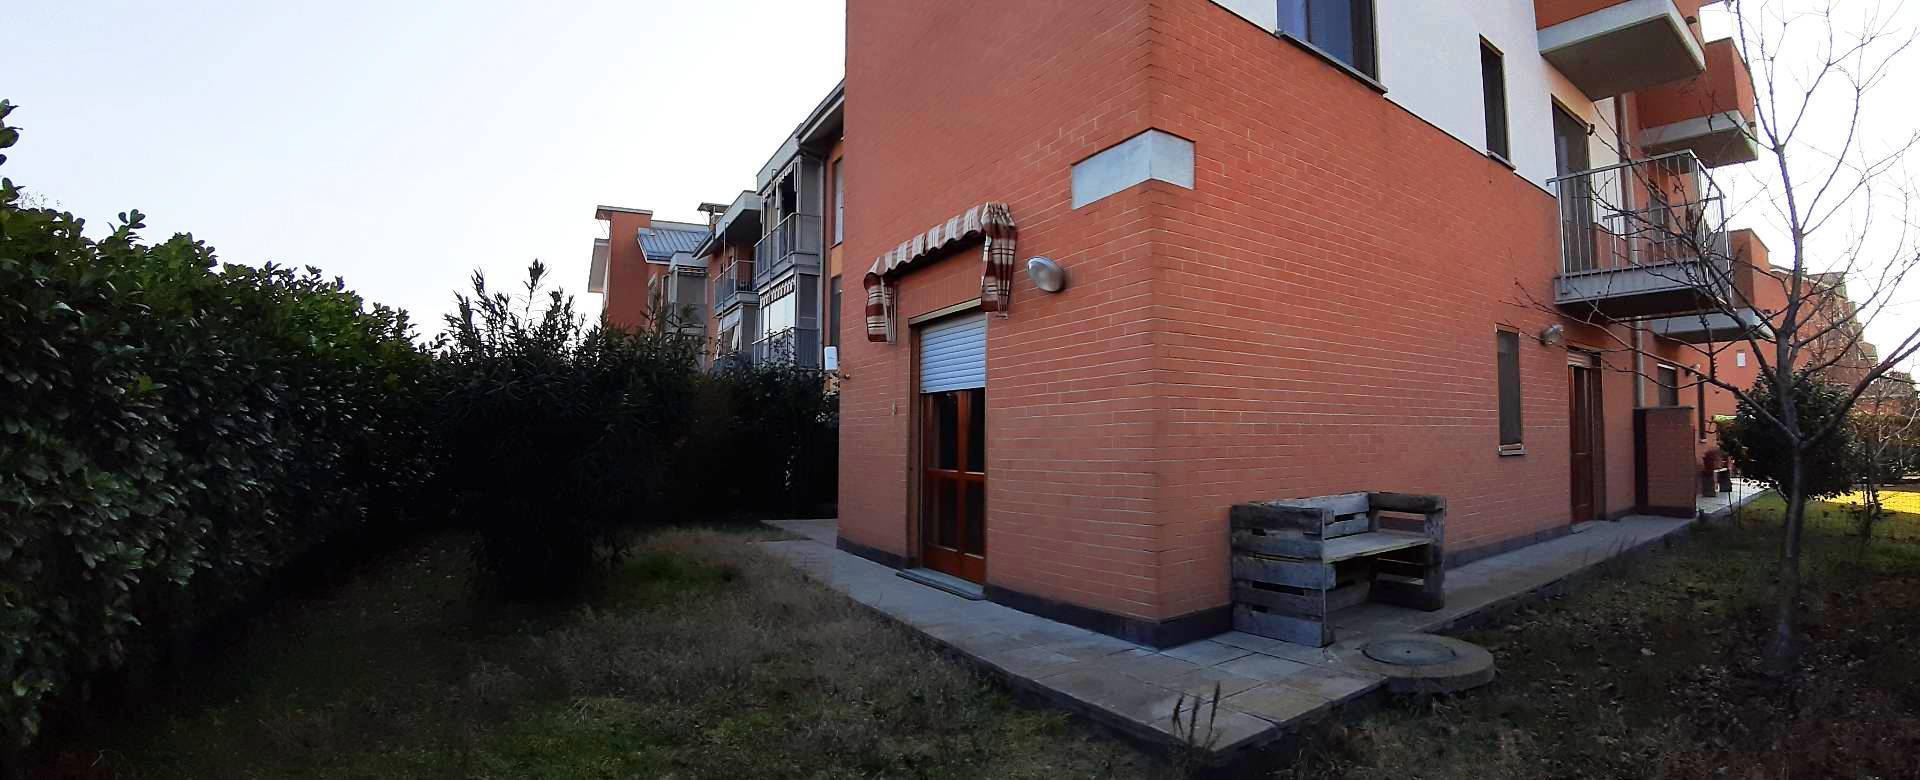 Appartamento in vendita a Caselle Torinese, 4 locali, zona Località: ImmersoNelVerde, prezzo € 189.000 | PortaleAgenzieImmobiliari.it